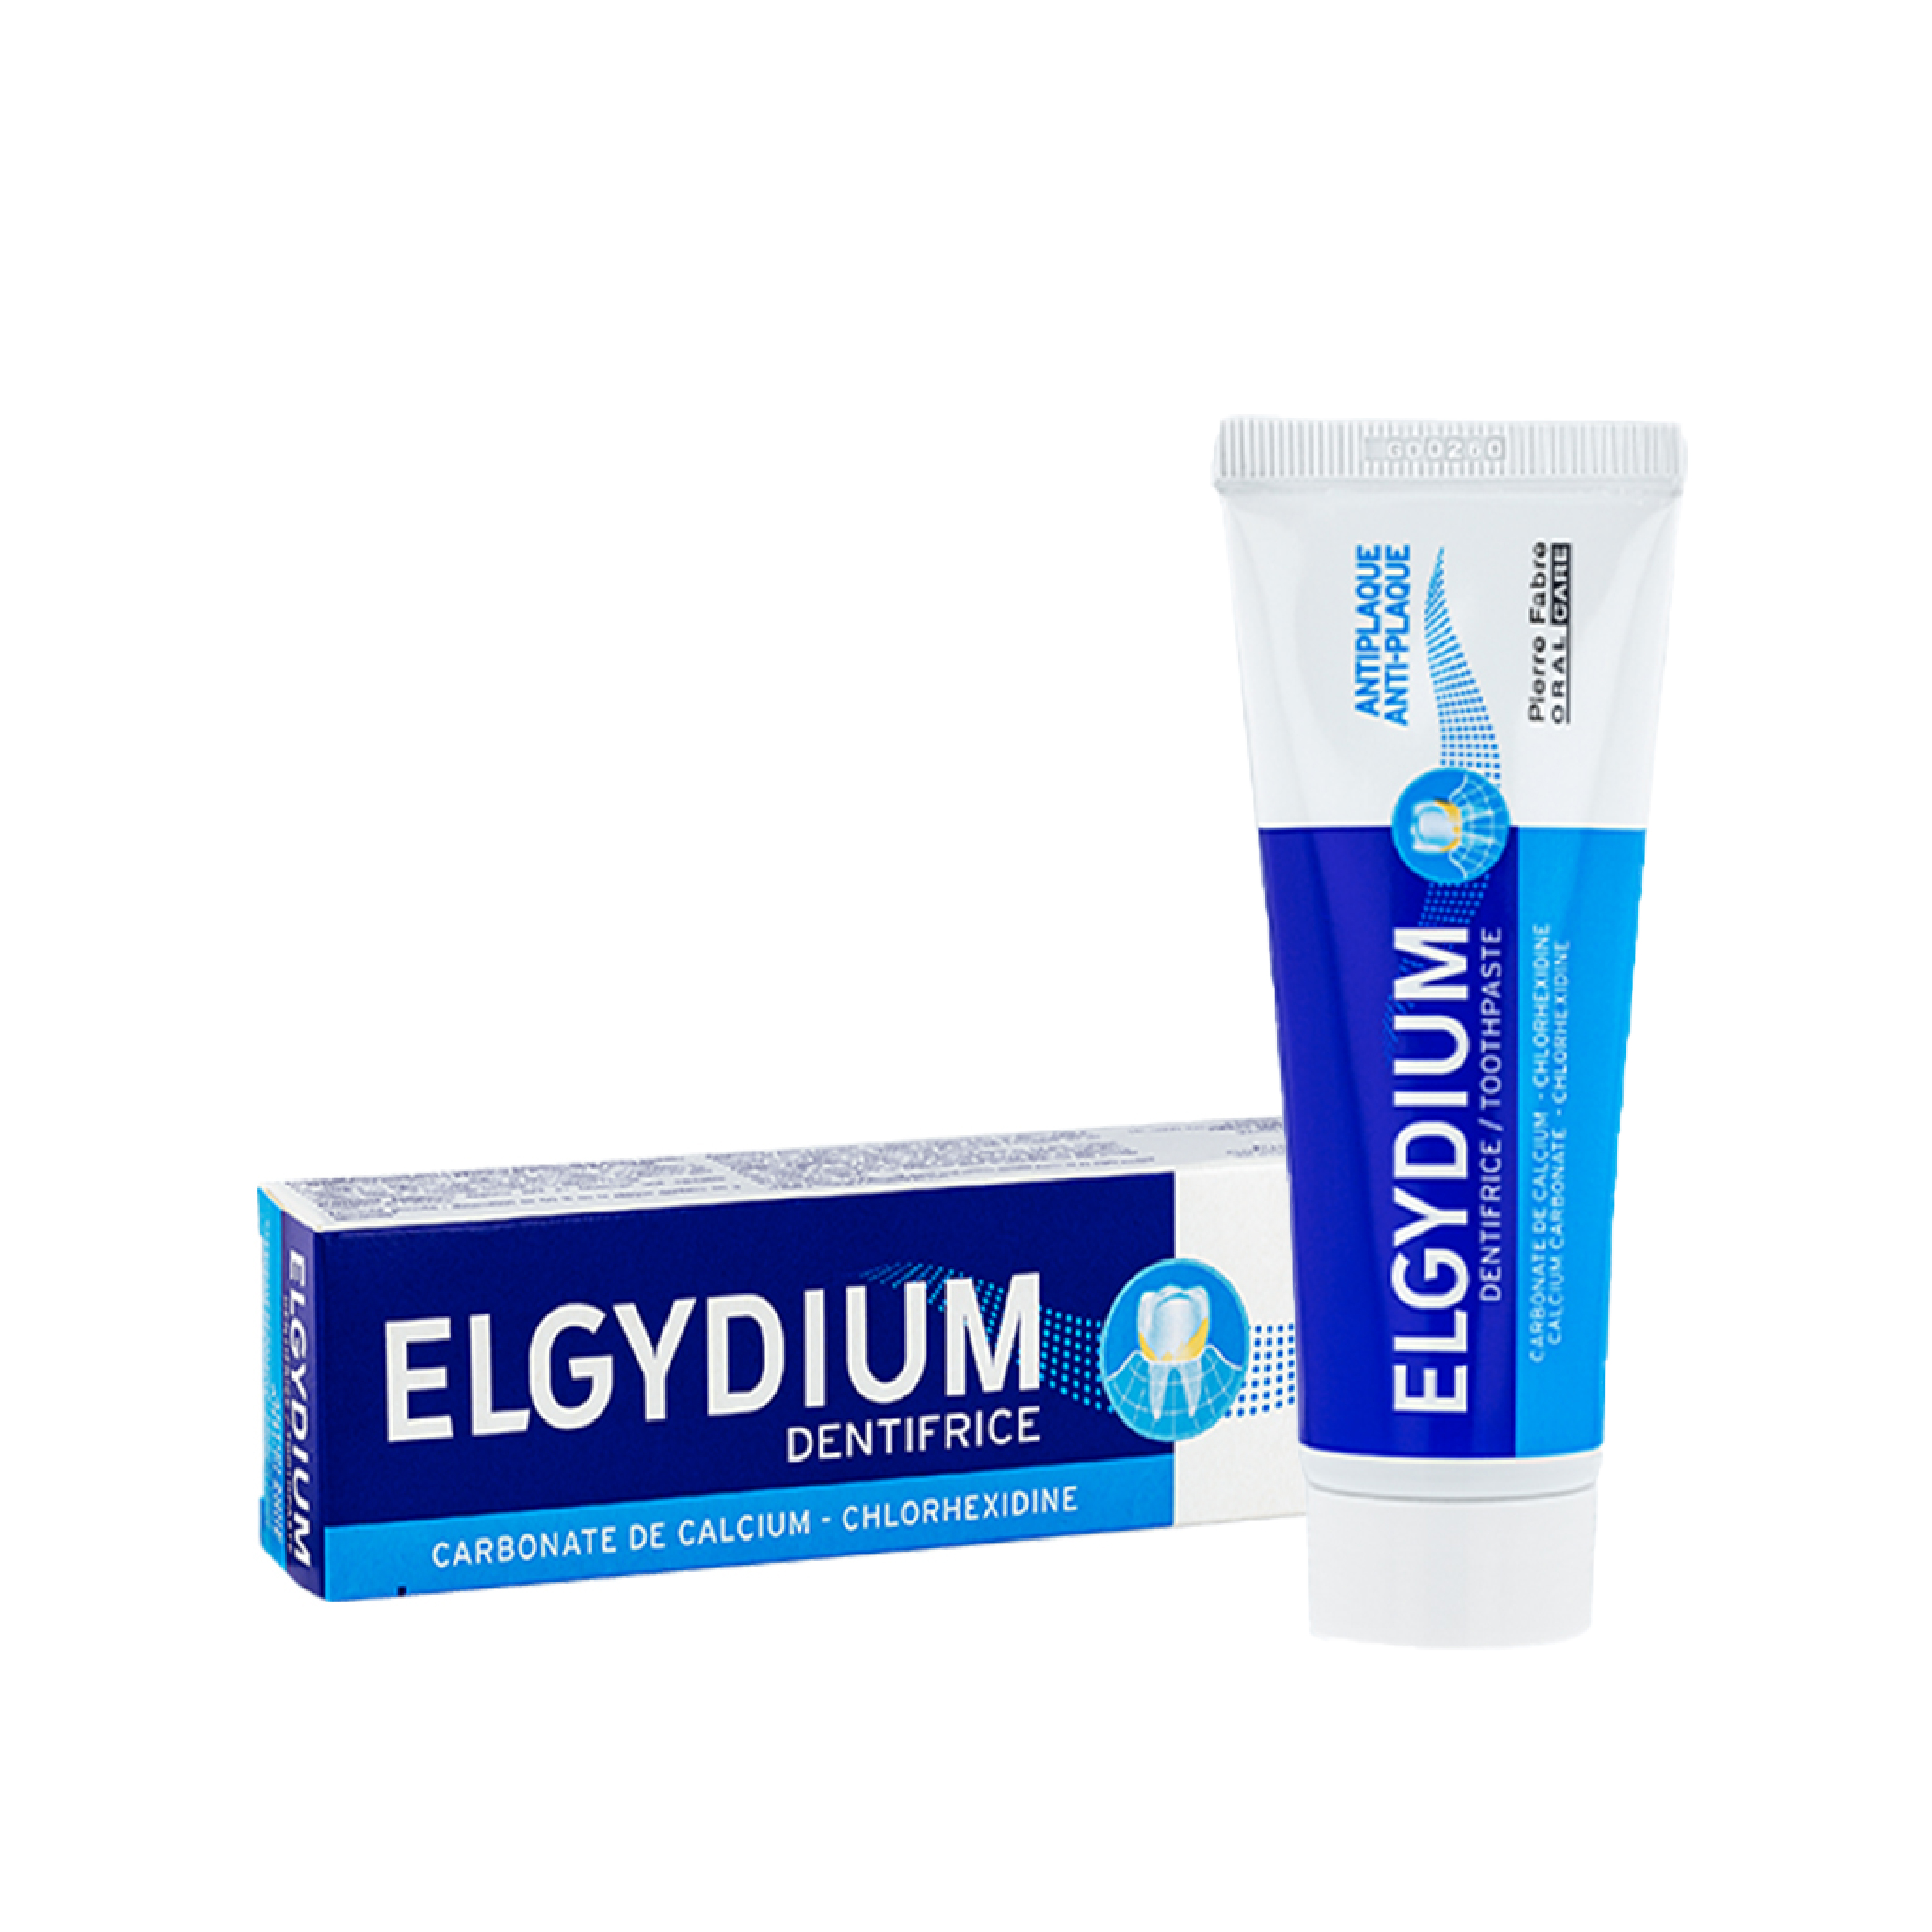 паста зубная против зубного налета anti plaque elgydium эльгидиум 50мл Эльгидиум паста зубная против зубного налета 50мл